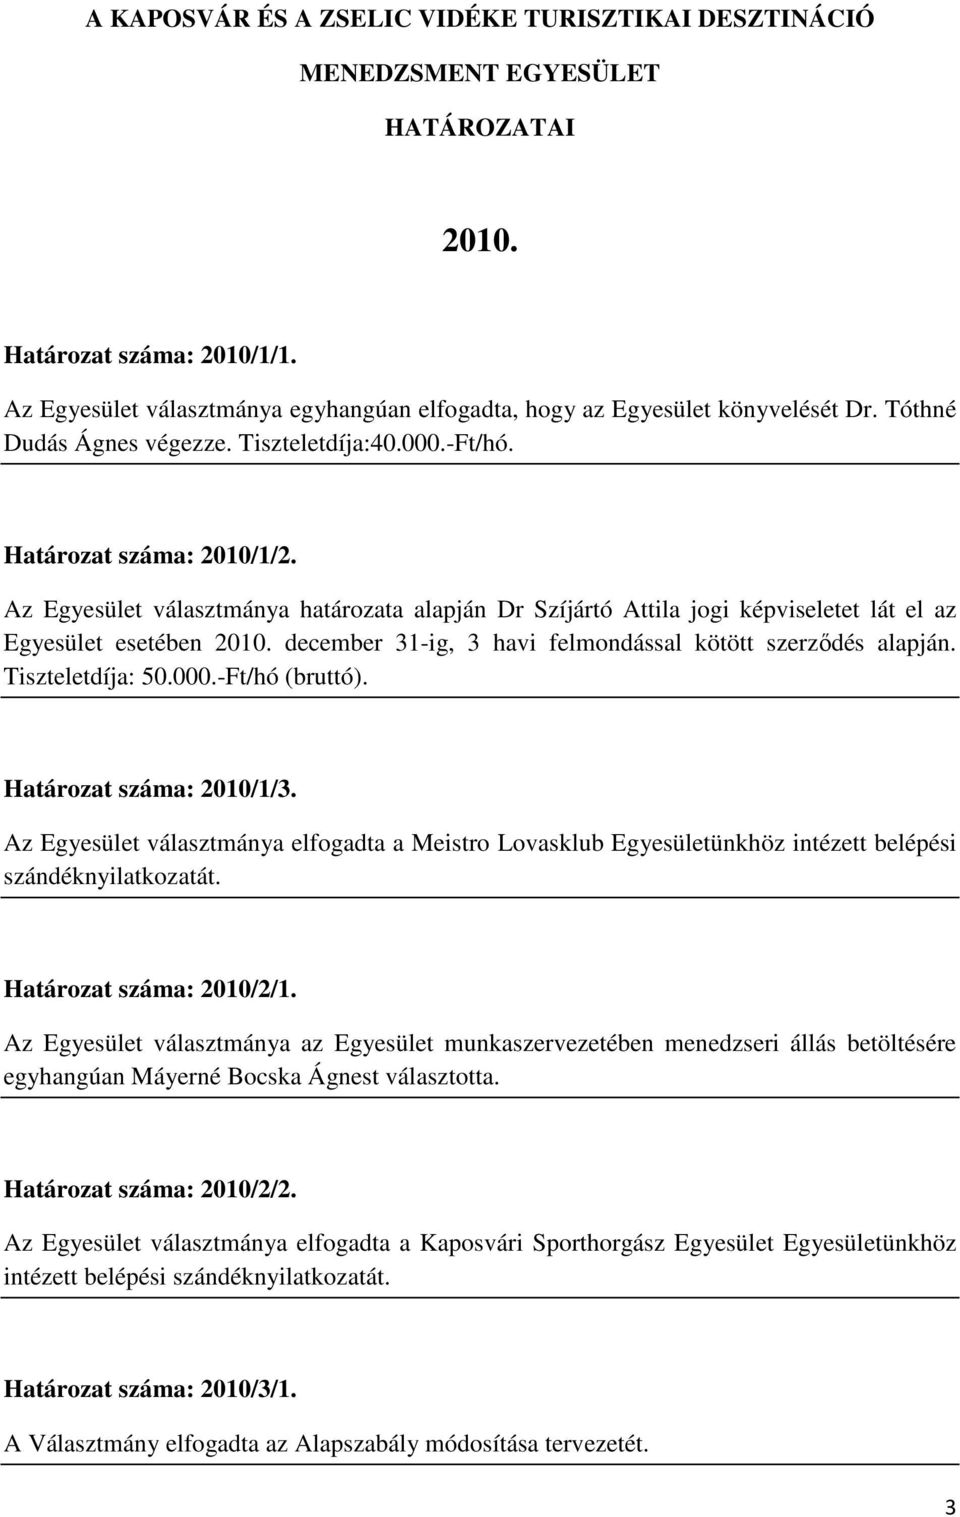 Az Egyesület választmánya határozata alapján Dr Szíjártó Attila jogi képviseletet lát el az Egyesület esetében 2010. december 31-ig, 3 havi felmondással kötött szerződés alapján. Tiszteletdíja: 50.